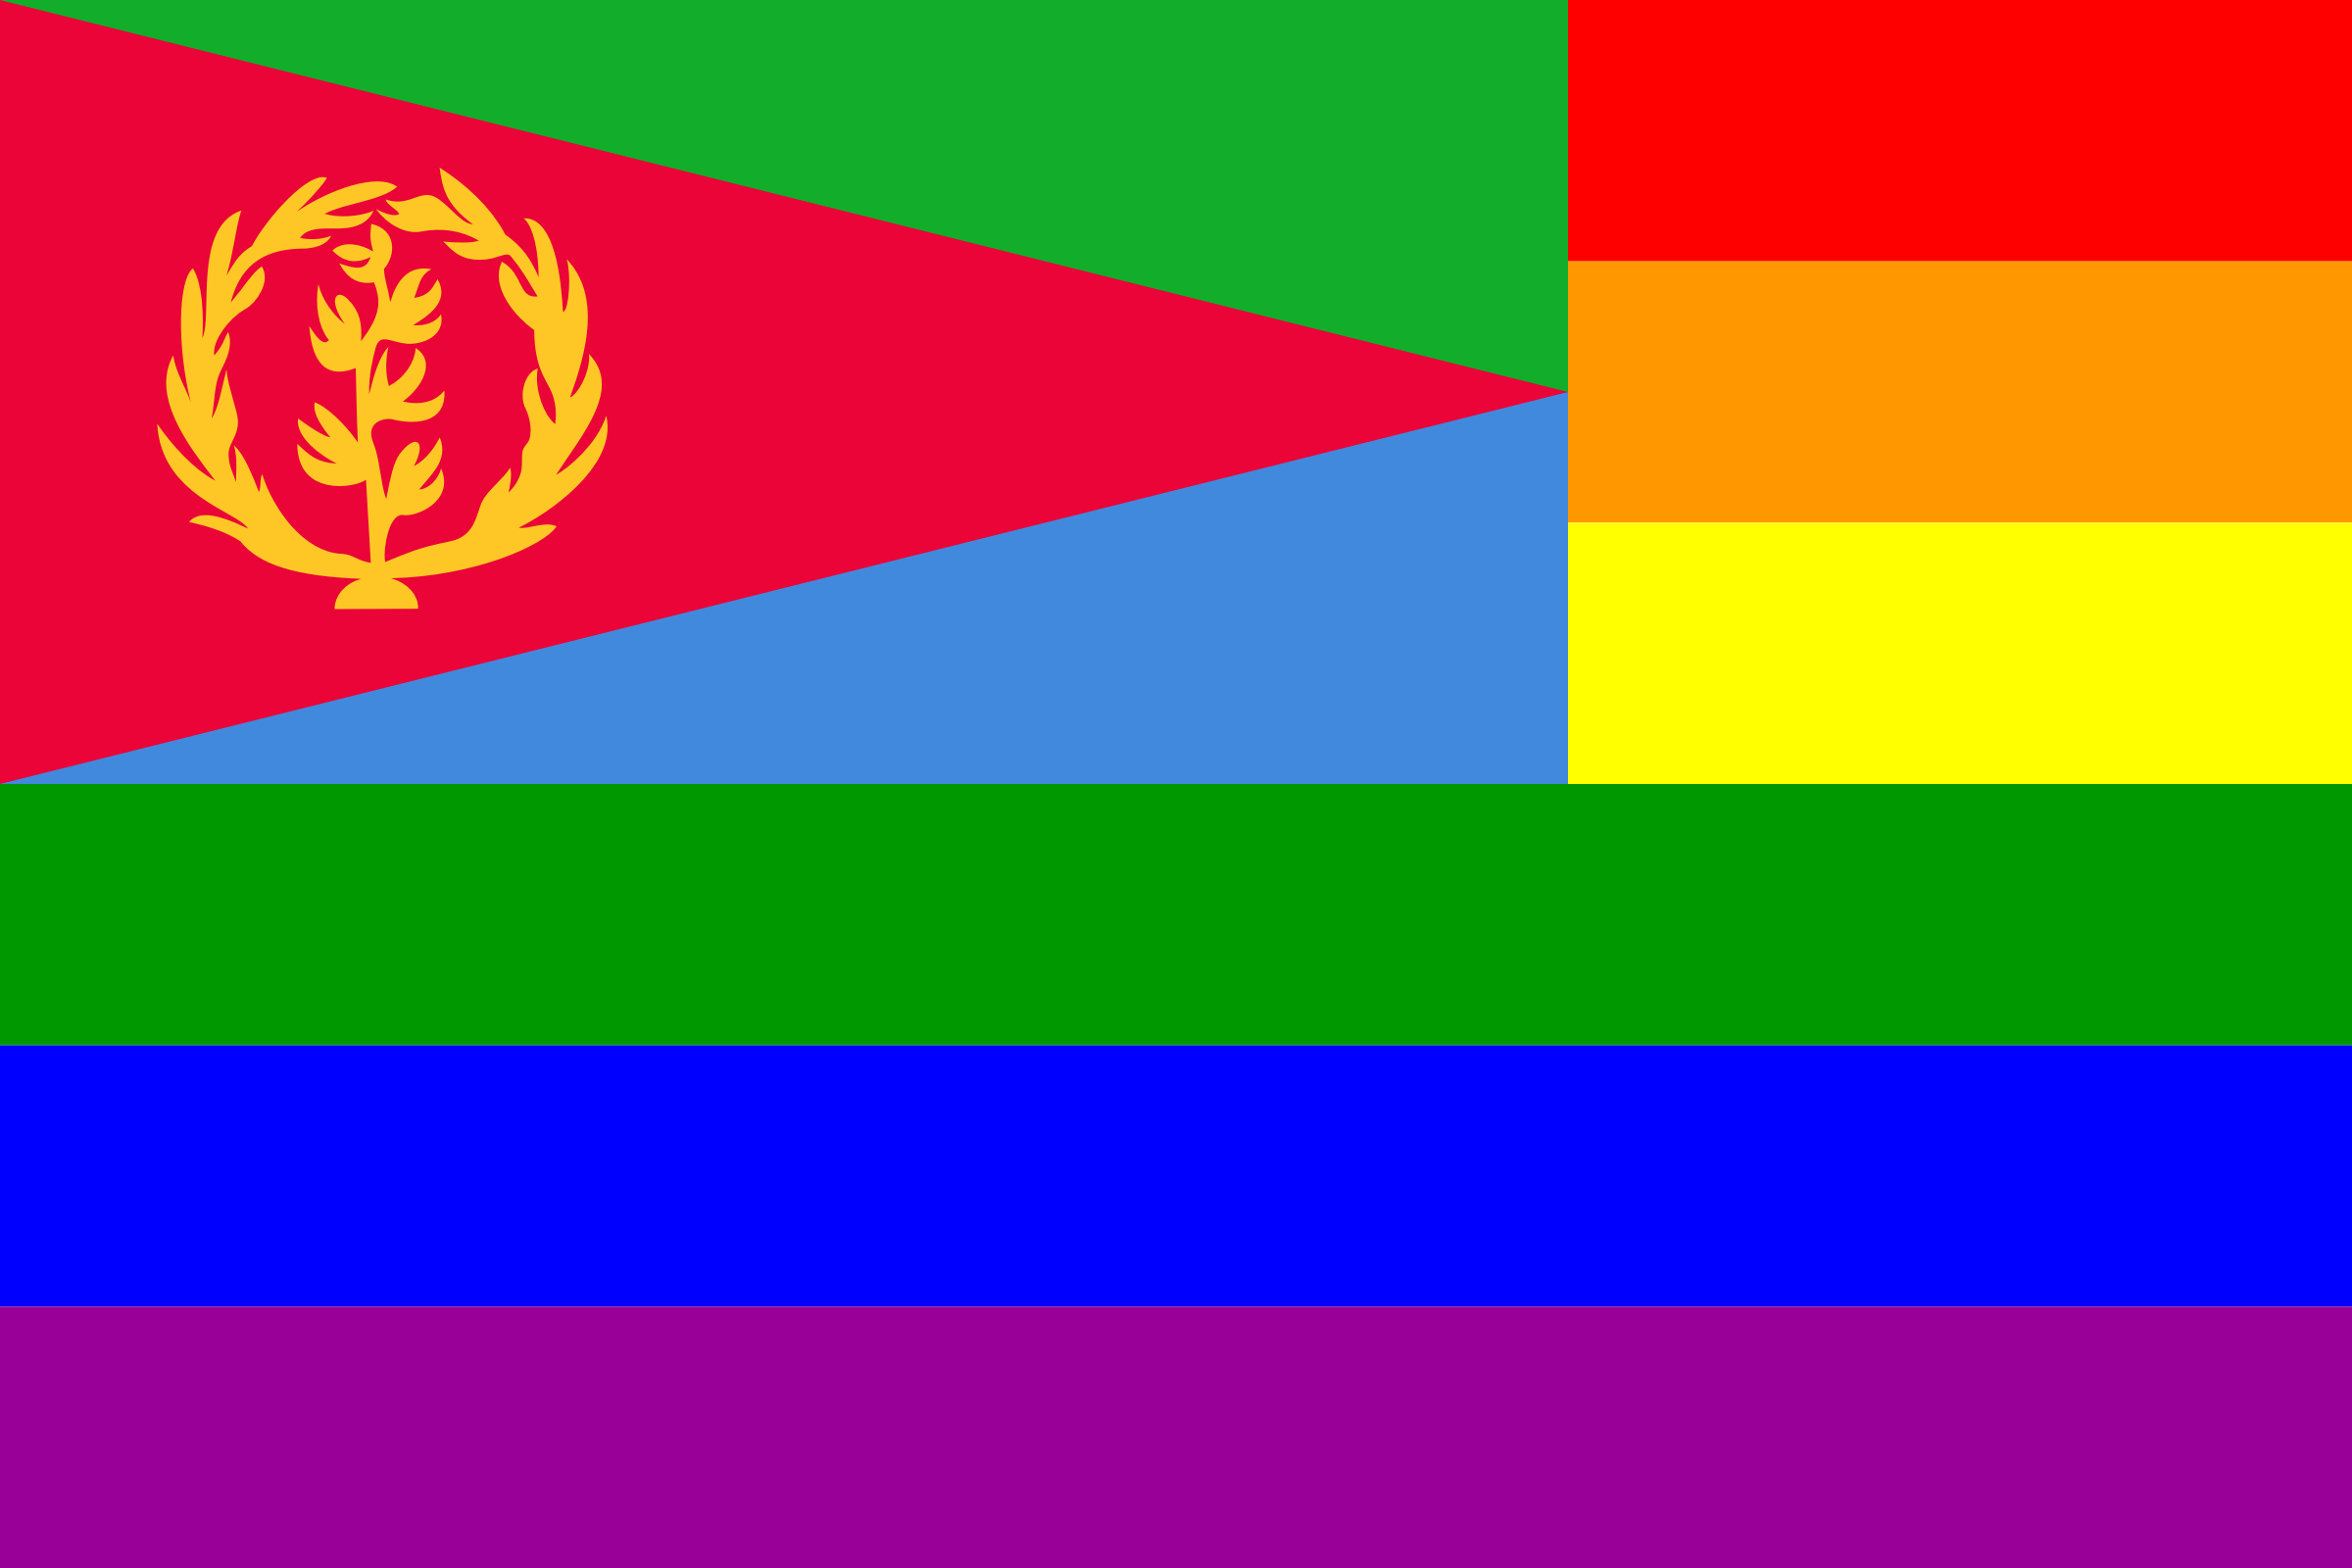 Clipart - The Eritrea Rainbow Flag